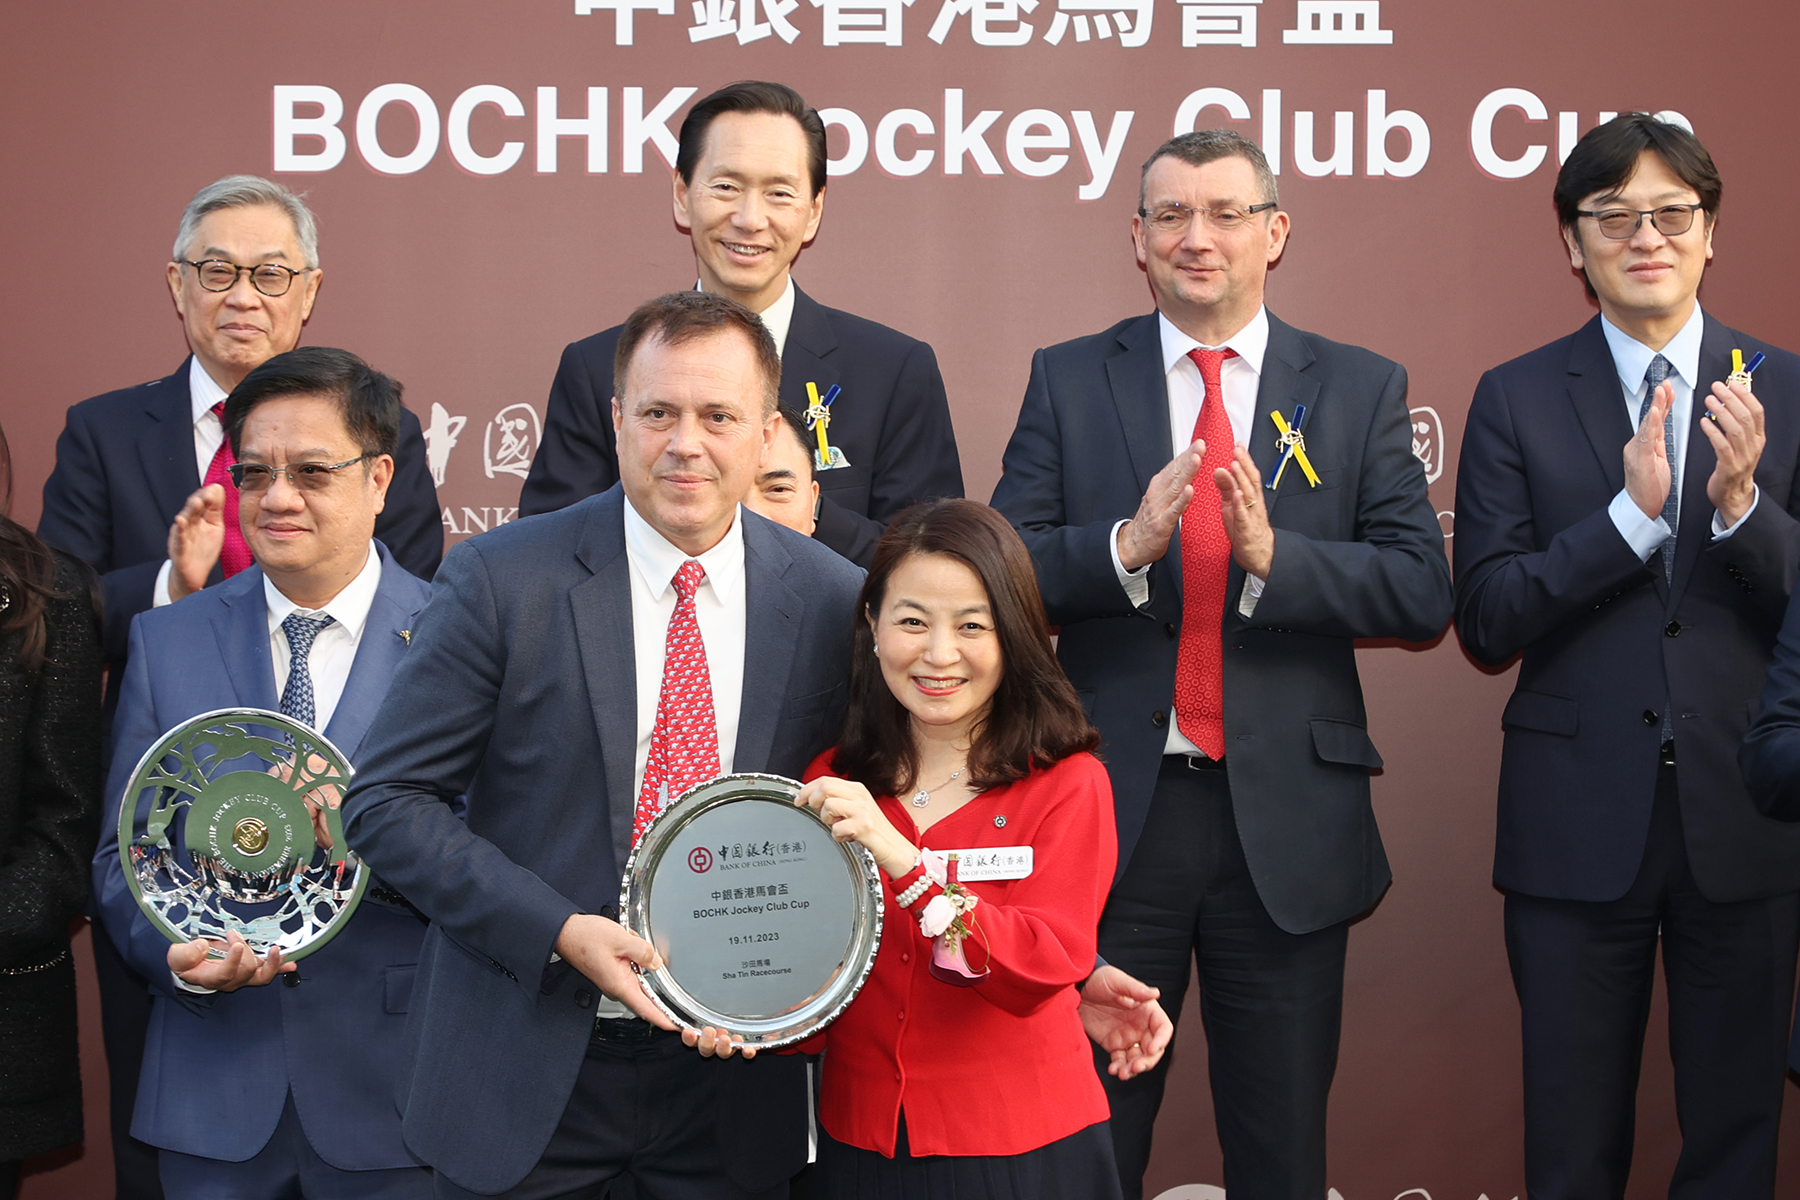 中國銀行(香港)有限公司個人金融及財富管理部總經理盧慧敏頒發紀念銀碟予練馬師方嘉柏。